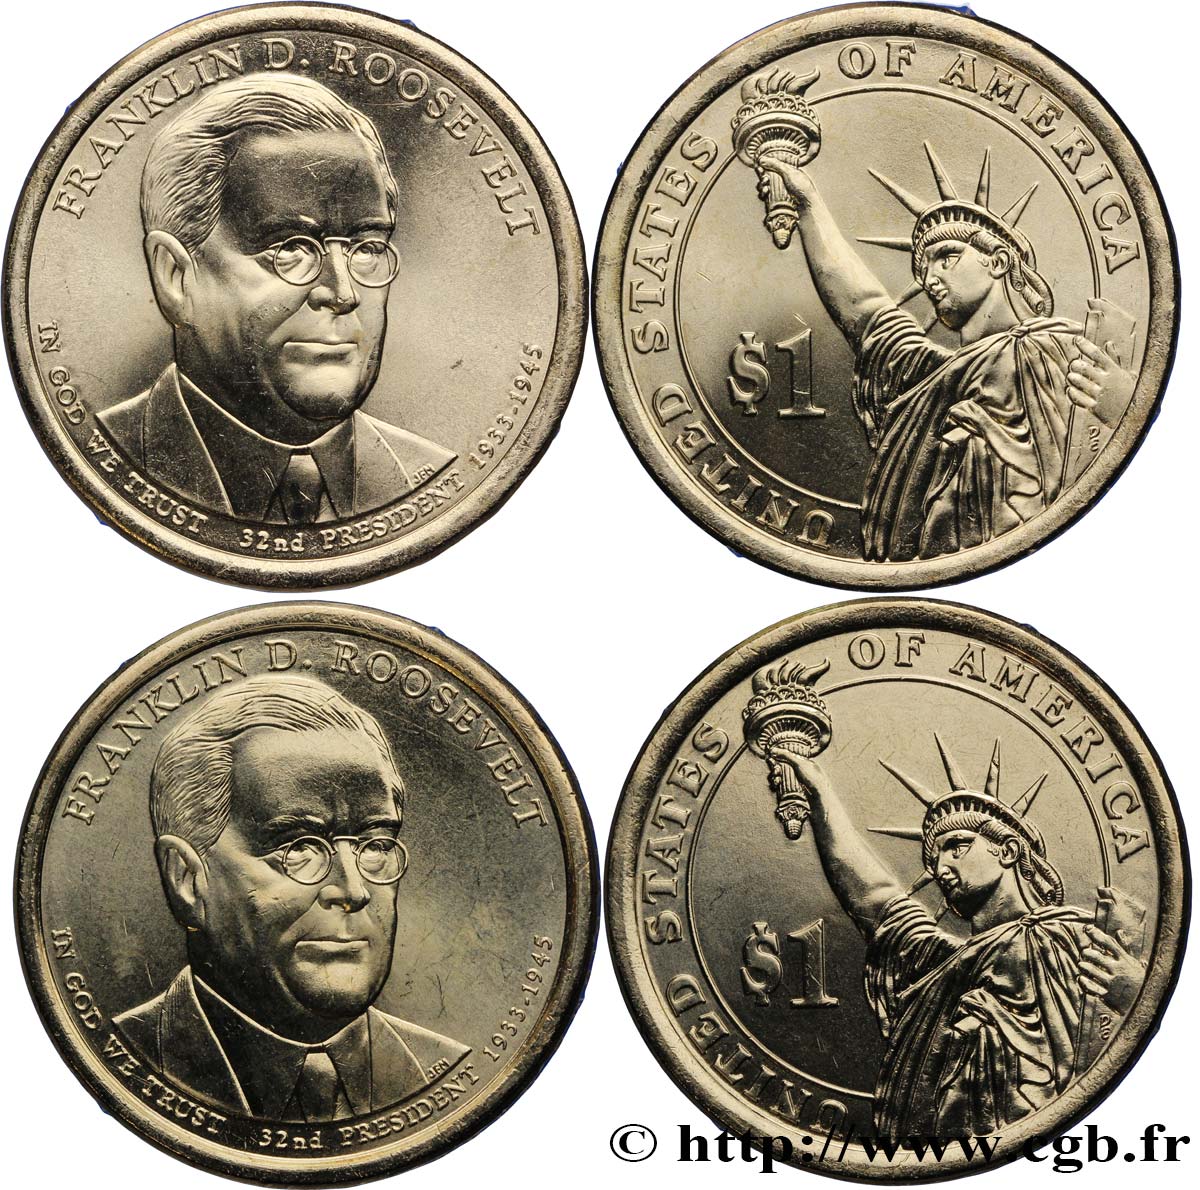 VEREINIGTE STAATEN VON AMERIKA Lot de deux monnaies 1 Dollar Franklin Delano Roosevelt 2014 Denver ST 